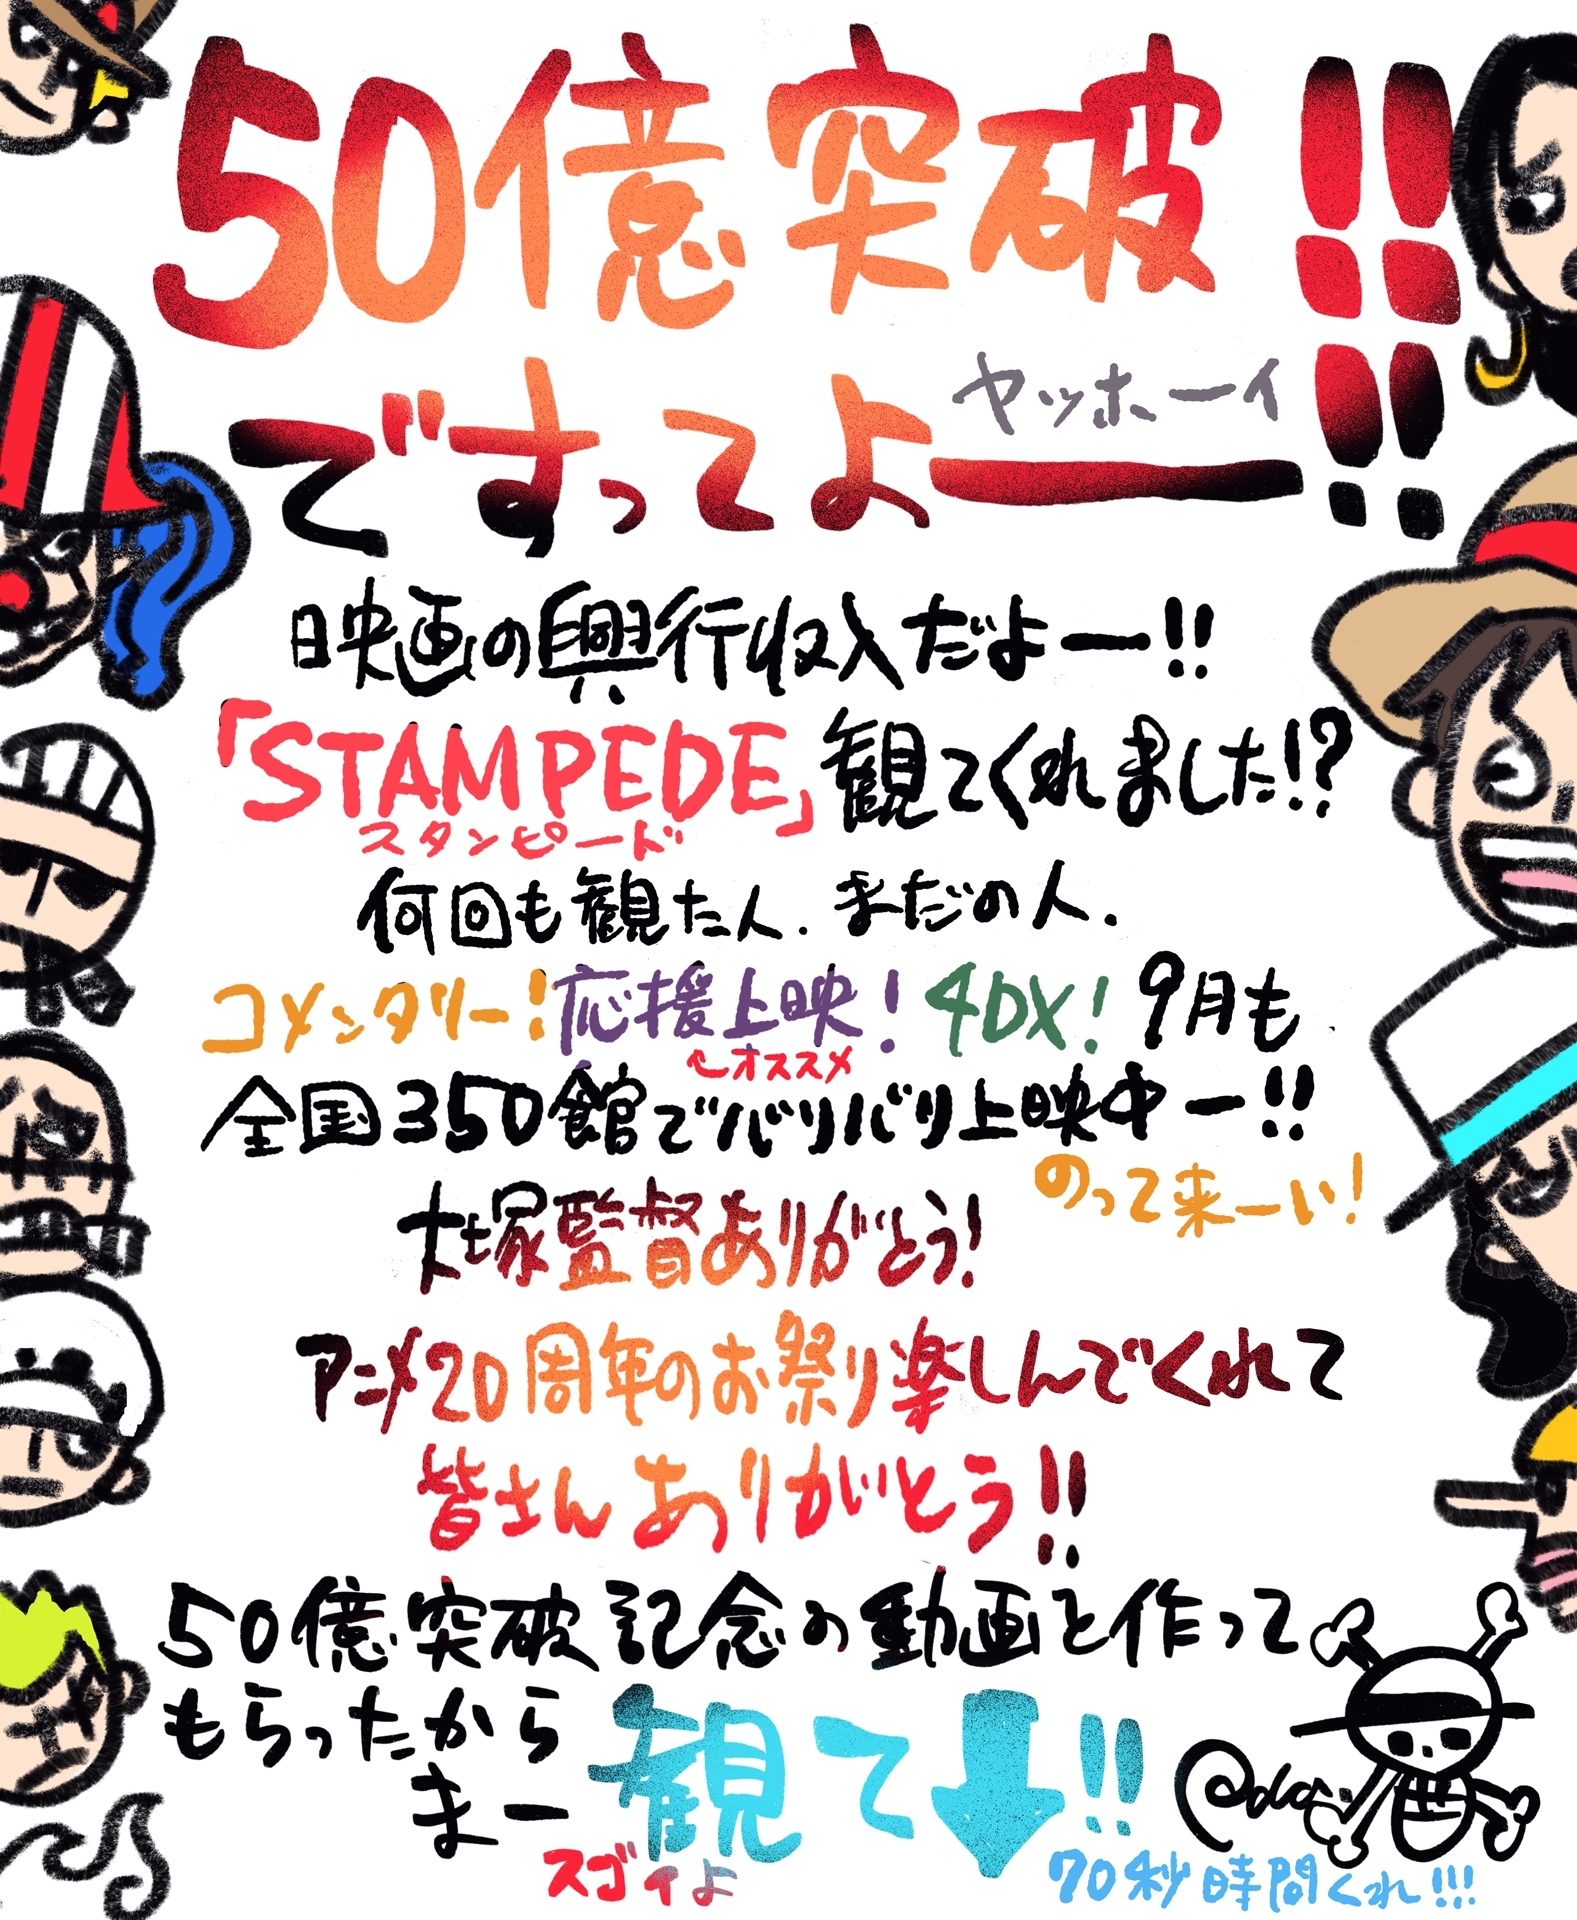 映画 One Piece Stampede 観客動員数370万人 興行収入は50億円を突破 アニメイトタイムズ